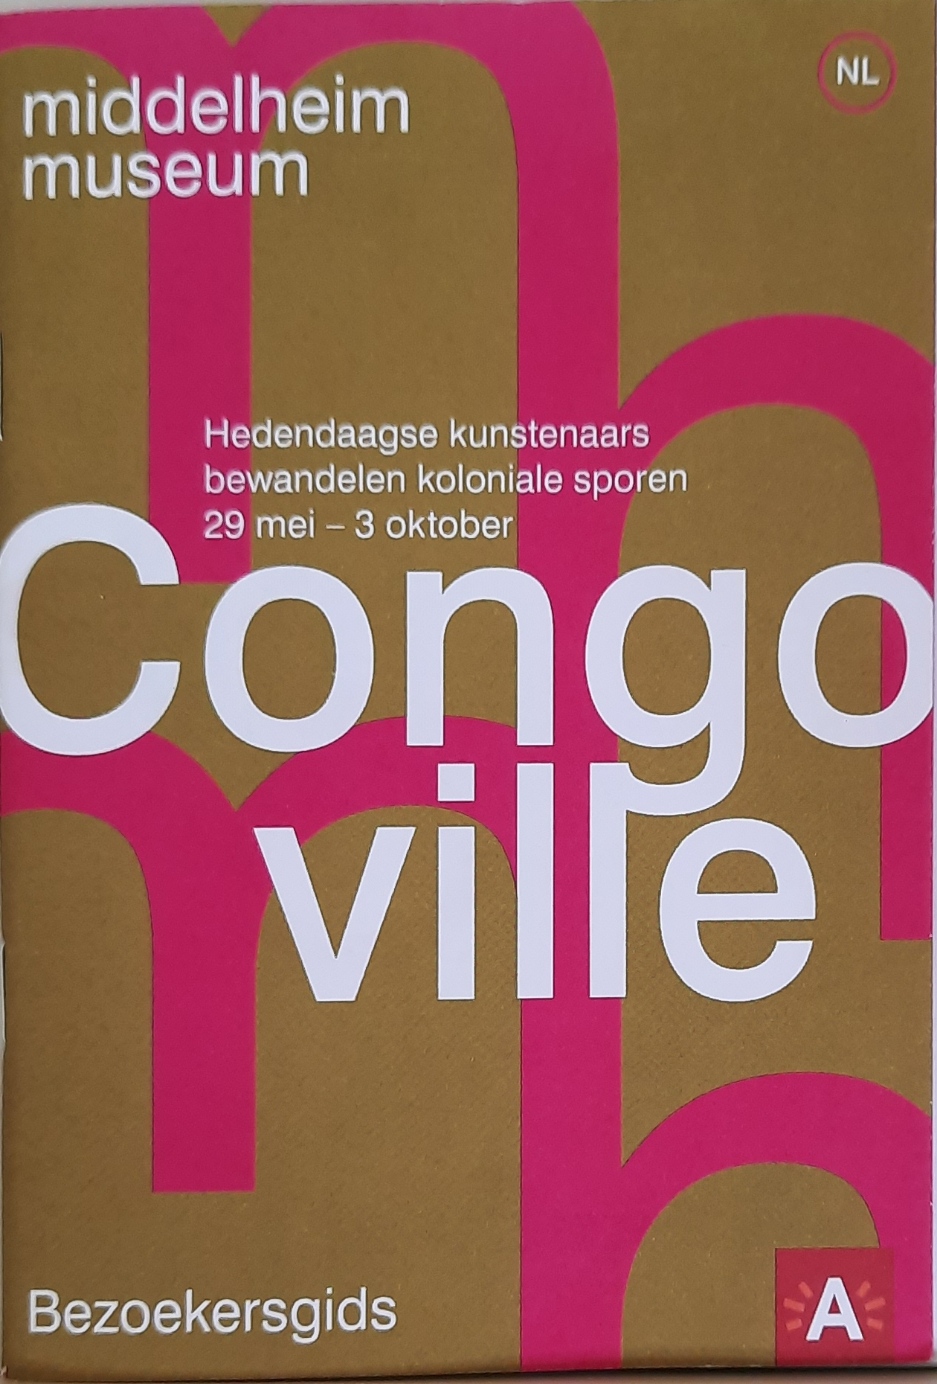 nws - Congo Ville. Hedendaagse kunstenaars bewandelen koloniale sporen. 29 mei tot 3 oktober 2021. Middelheim, Antwerpen. Bezoekersgids.